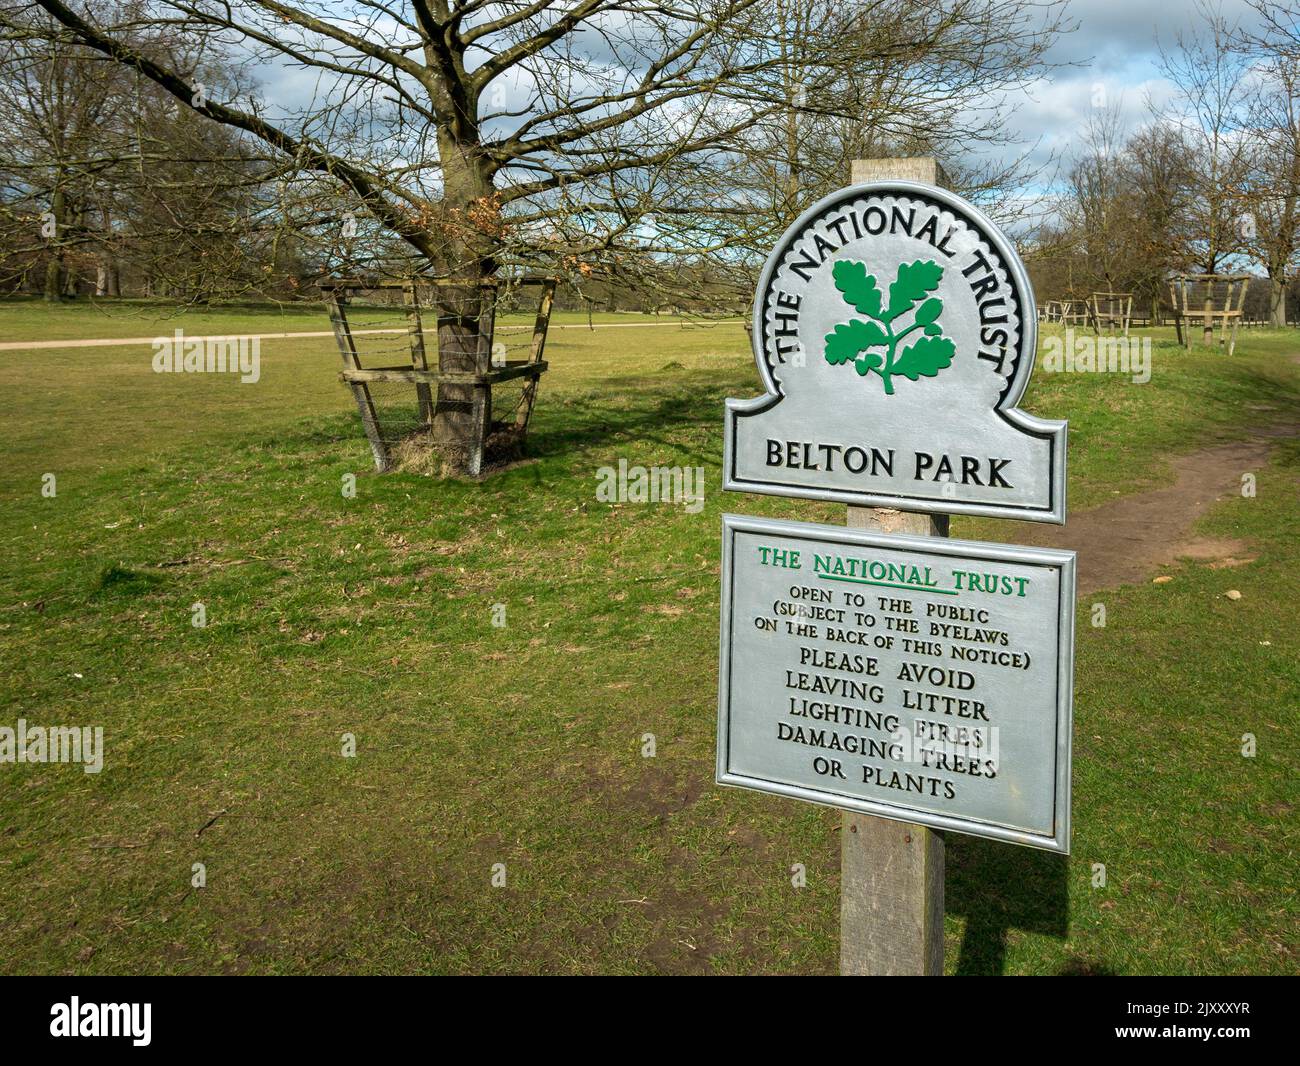 Nuevo, limpio, luminoso, recién pintado, cartel del National Trust en la entrada del parque Belton con árboles y terrenos verdes detrás, Grantham, Inglaterra, Reino Unido Foto de stock